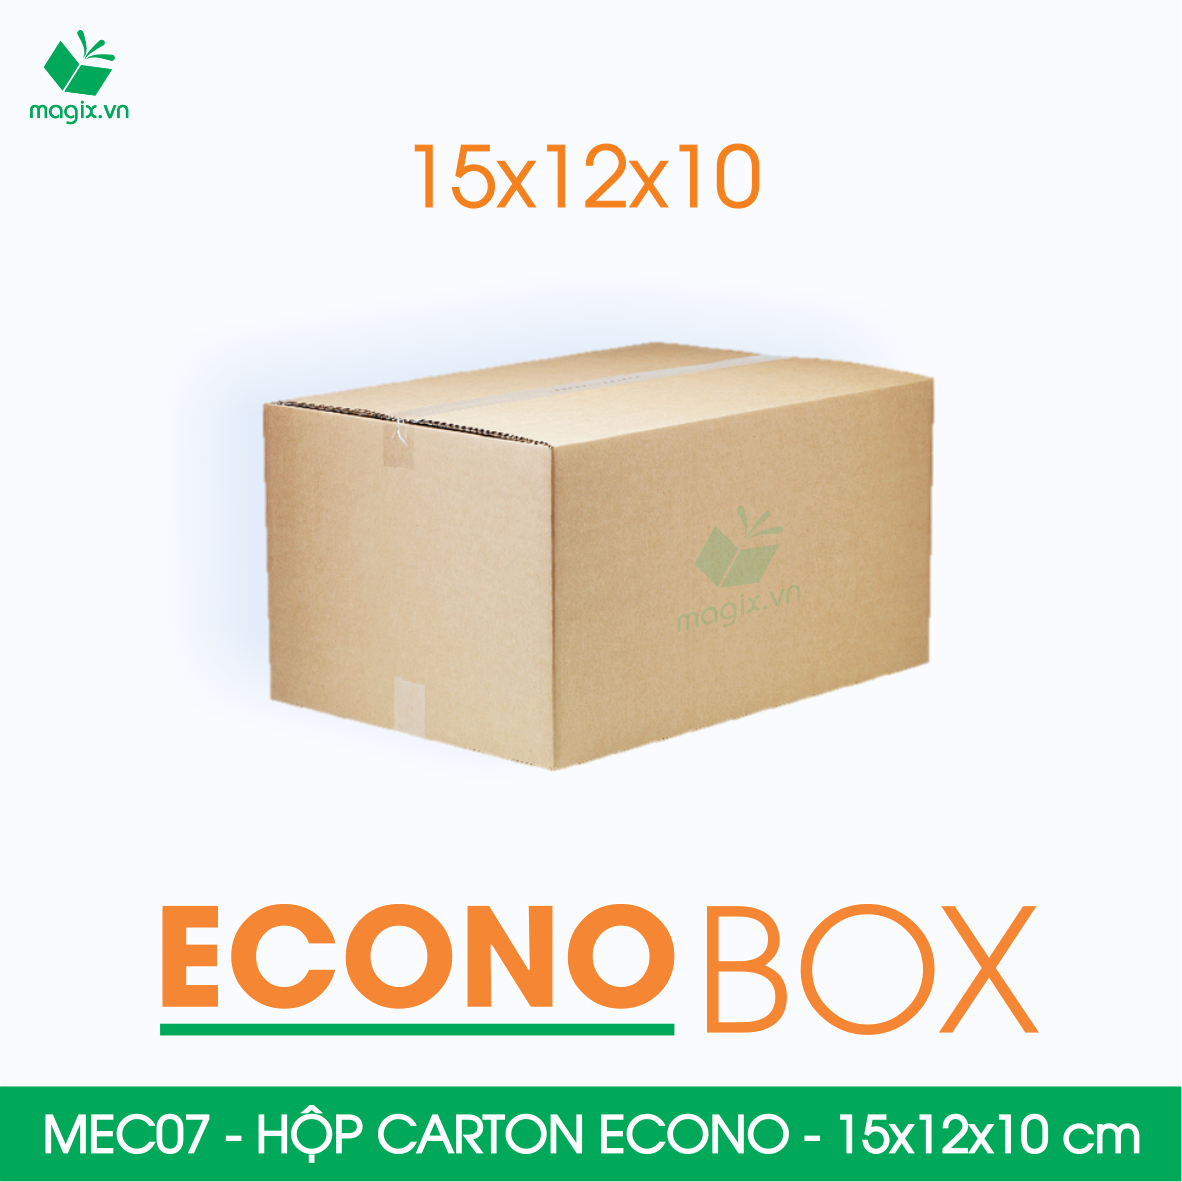 Hình ảnh MEC07 - 15x12x10 cm - Combo 20 thùng hộp carton trơn siêu tiết kiệm ECONO